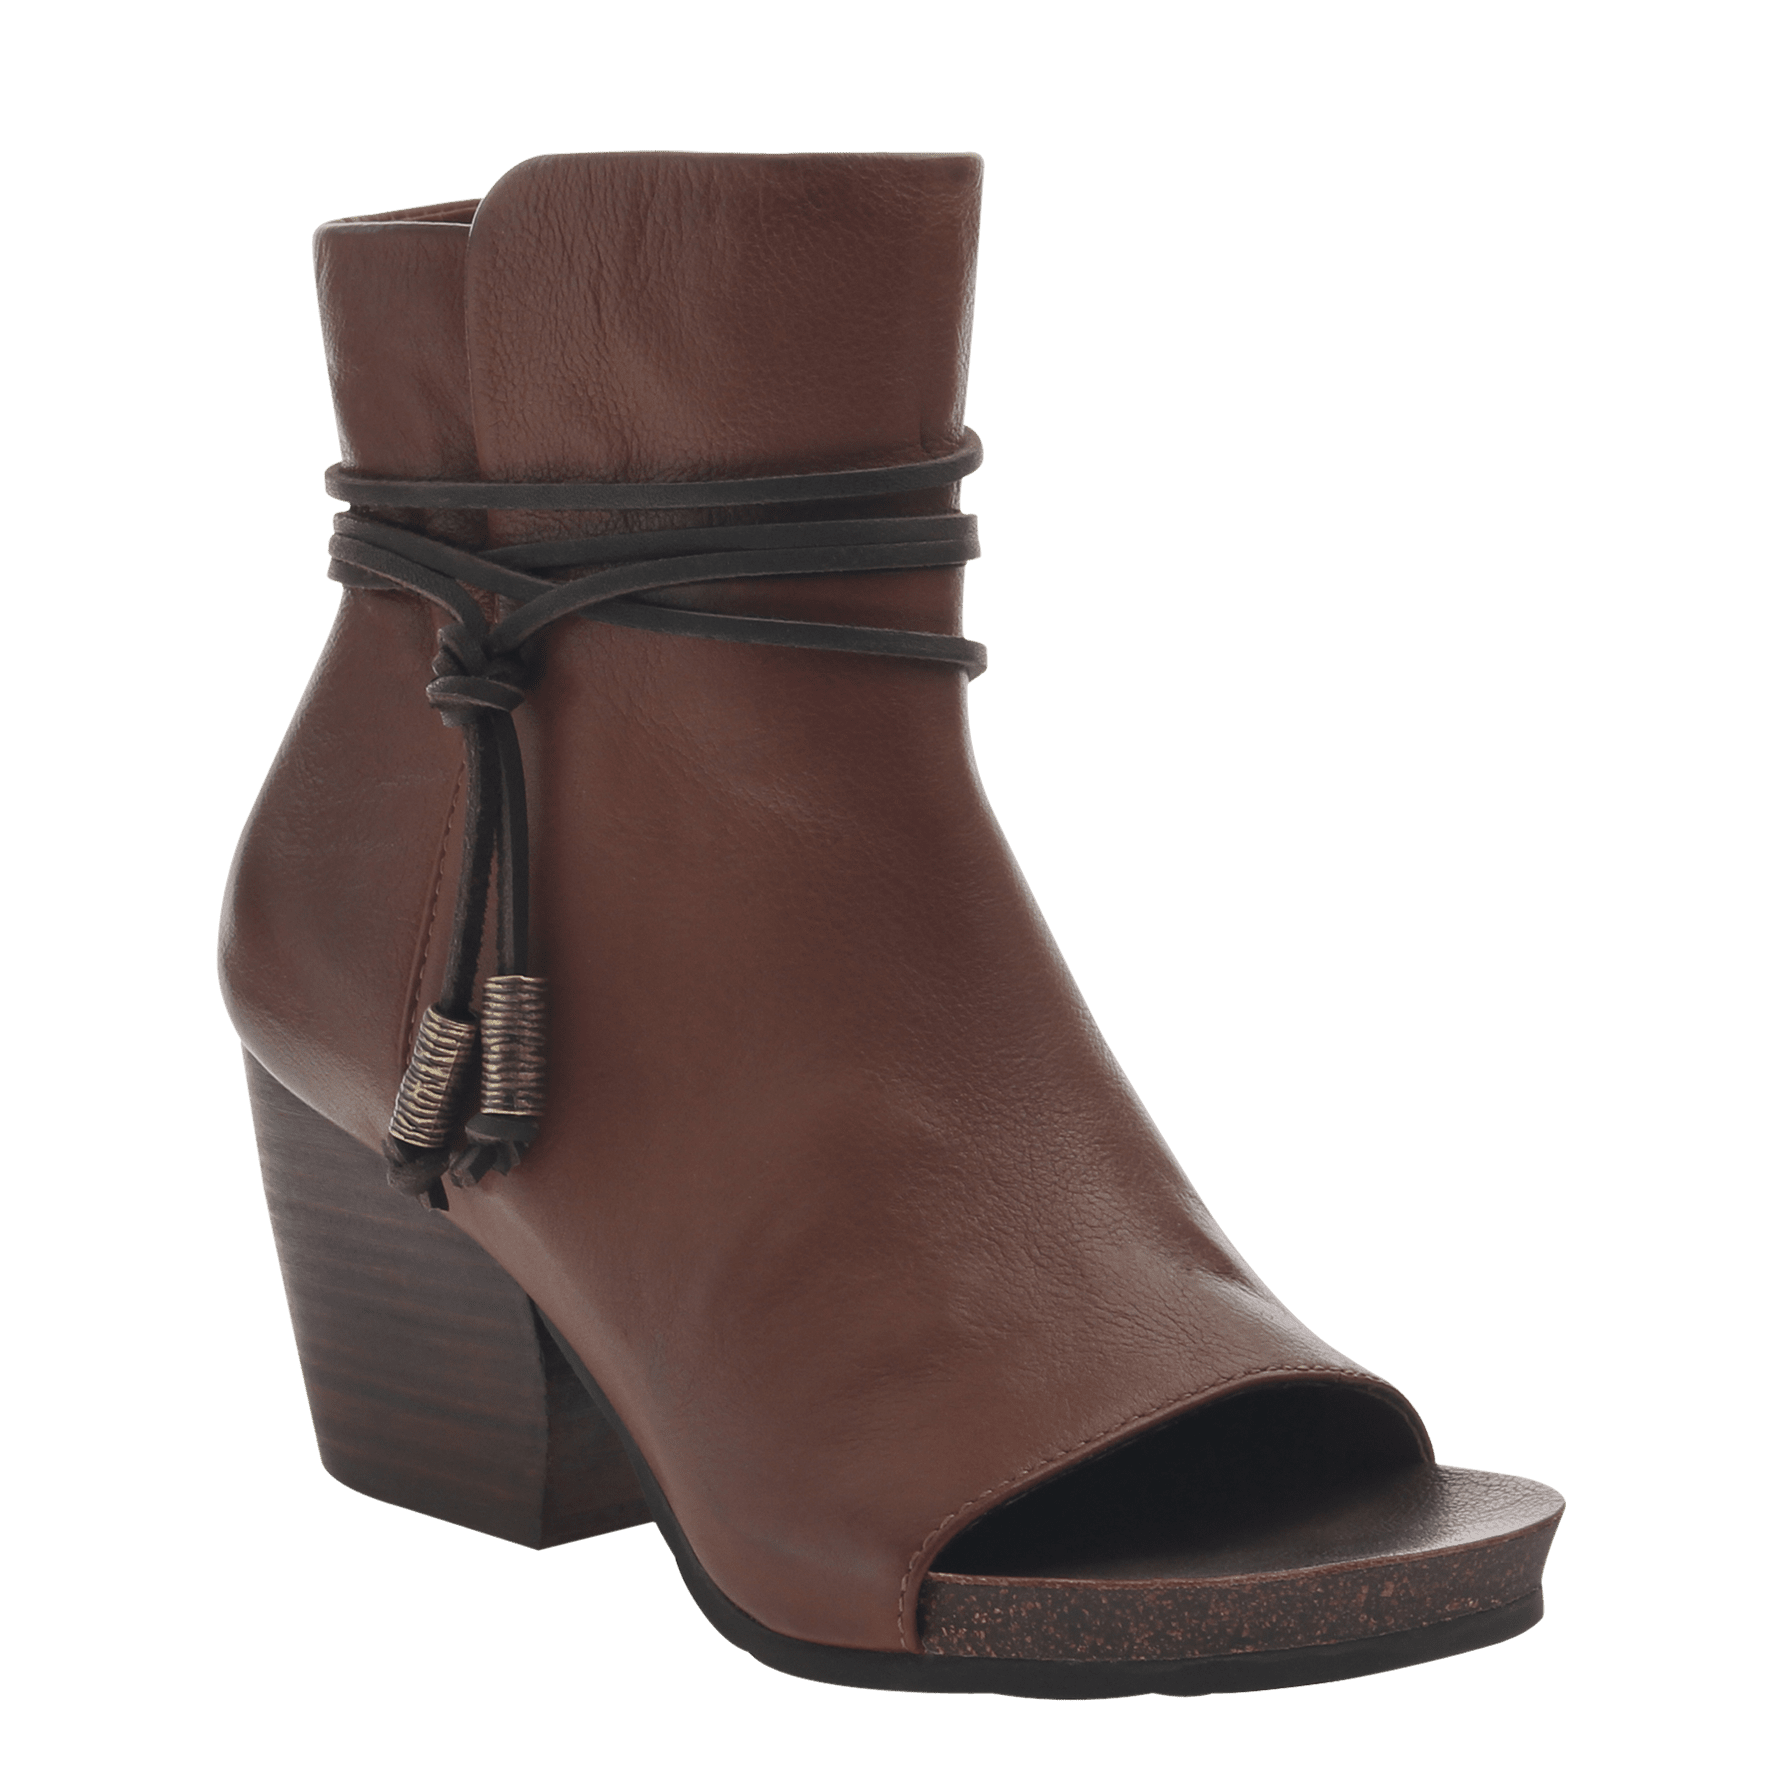 Vagabond Oak Open Toe Booties | Women's Shoes by OTBT shoes